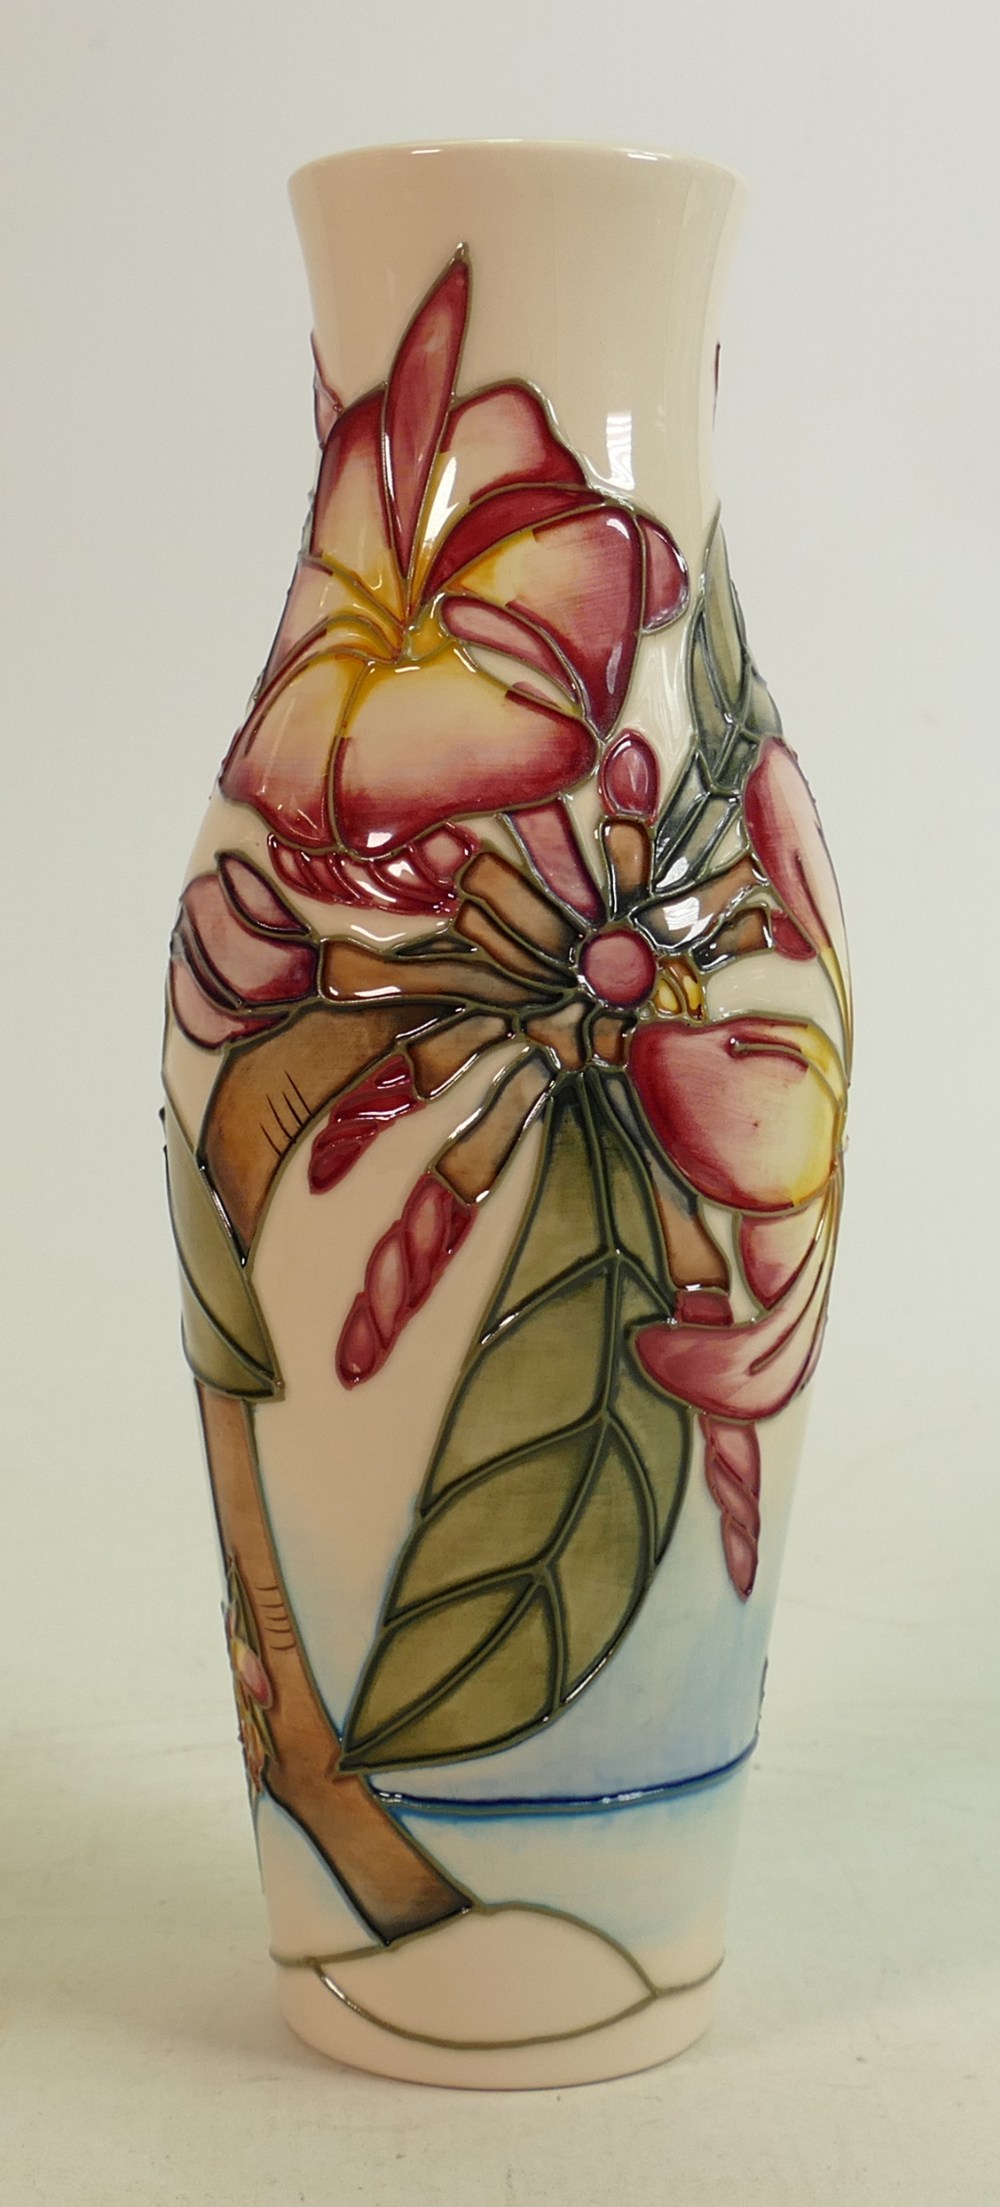 Moorcroft Frangipani vase: Dated 1999, height 26cm.